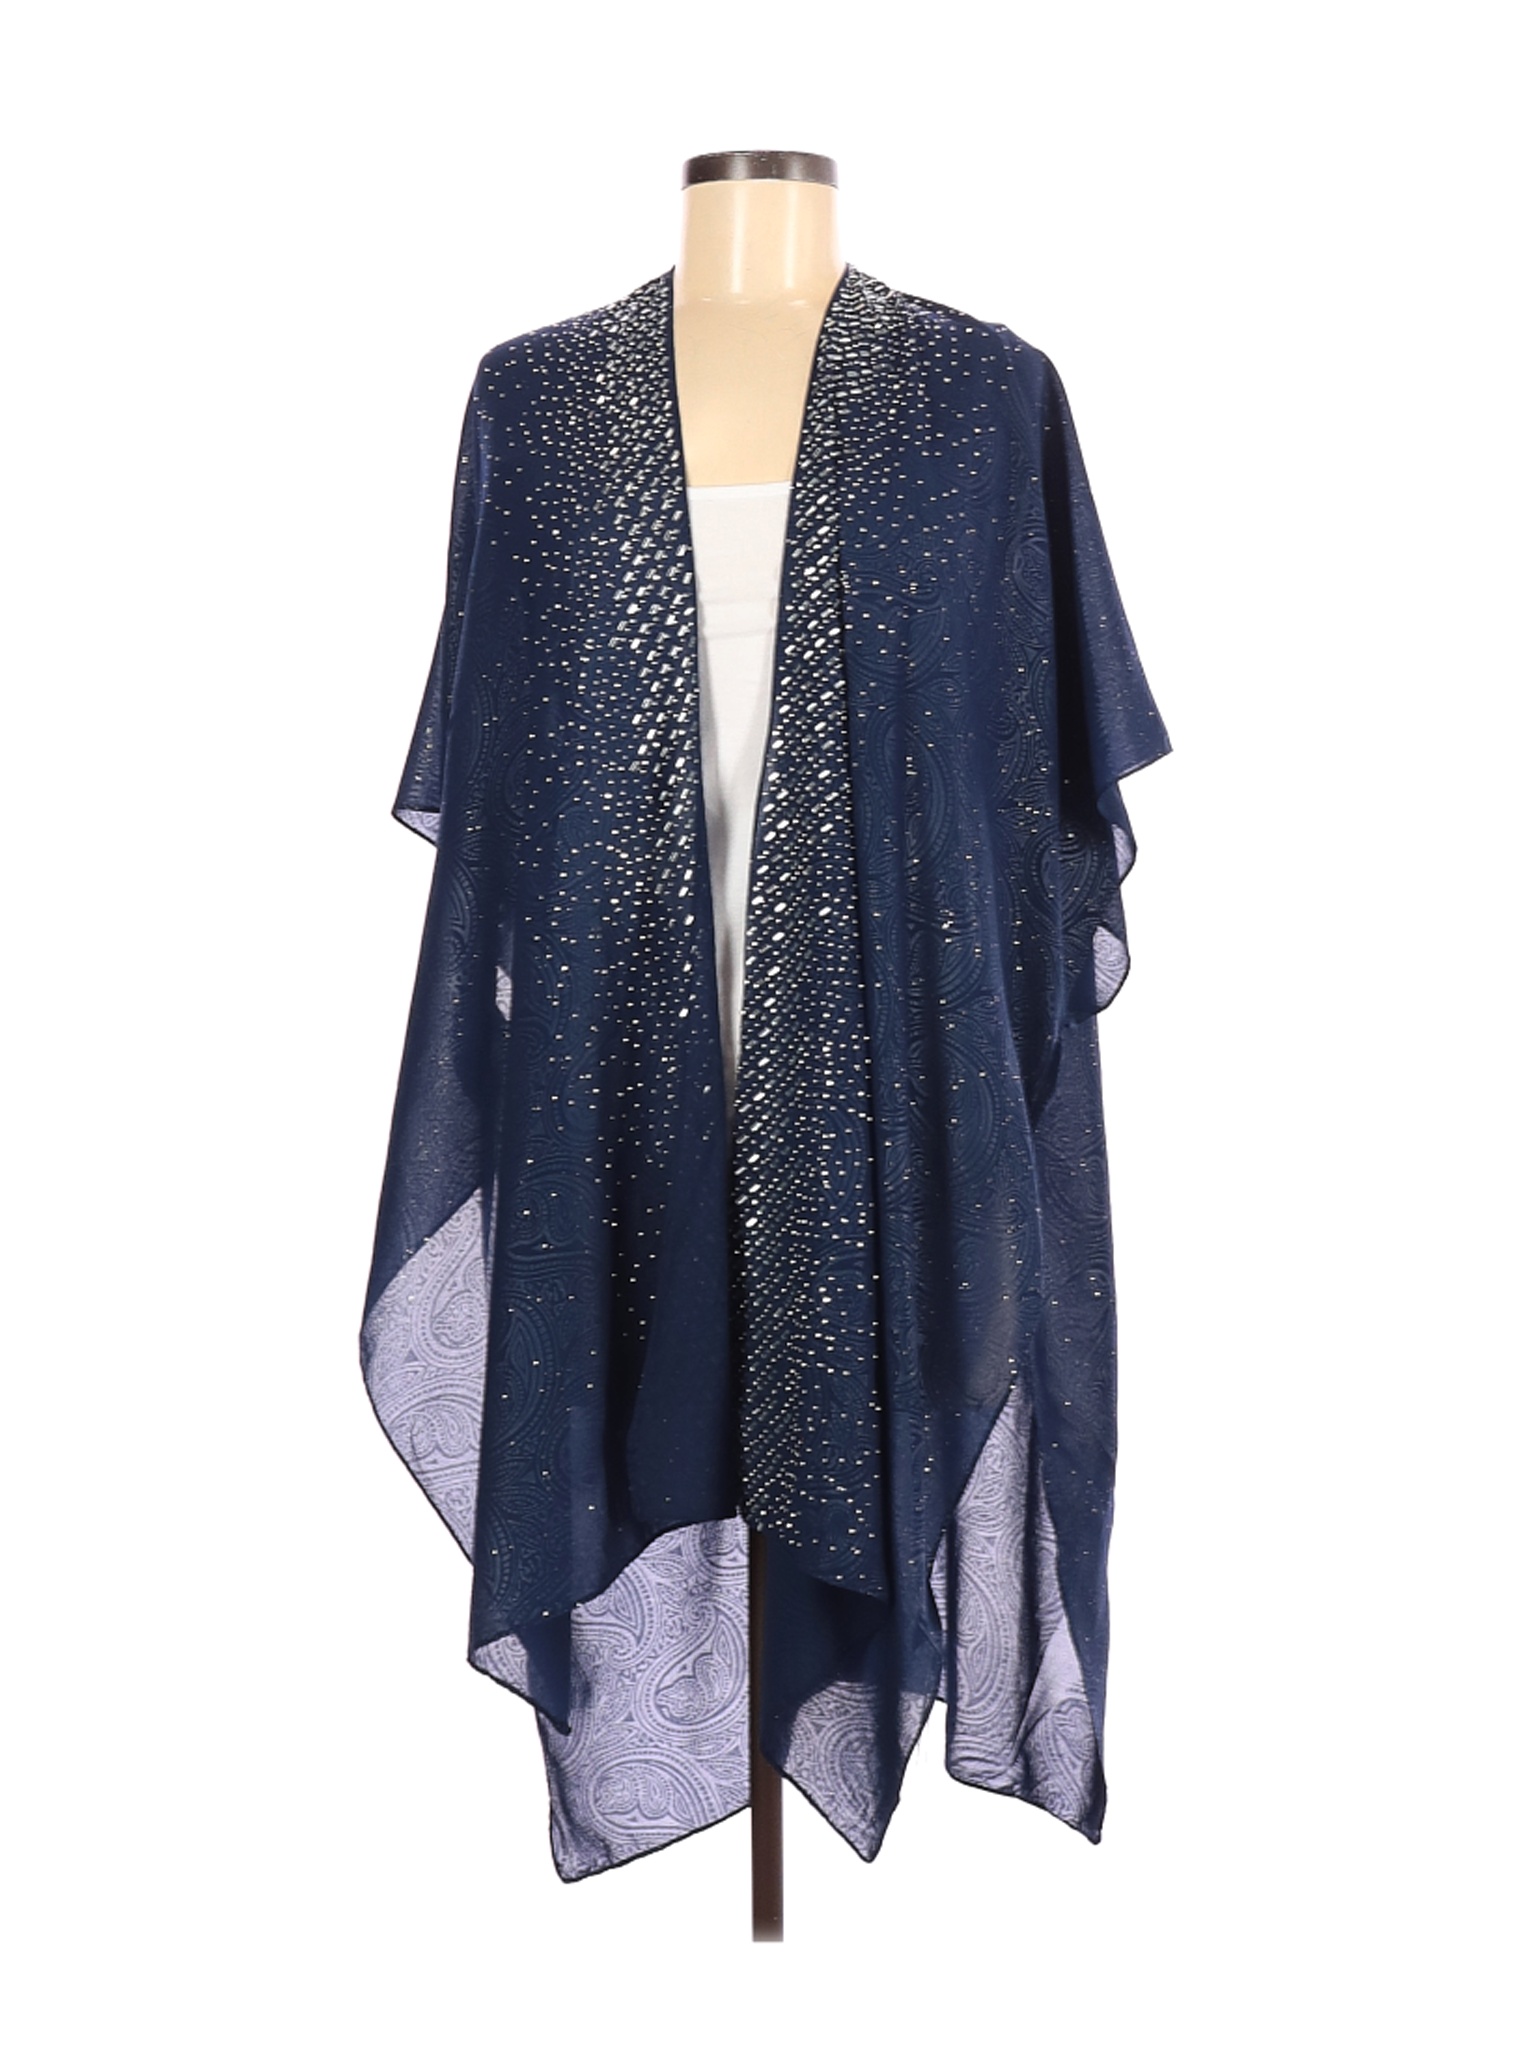 NWT Jessica McClintock Women Blue Kimono One Size | eBay